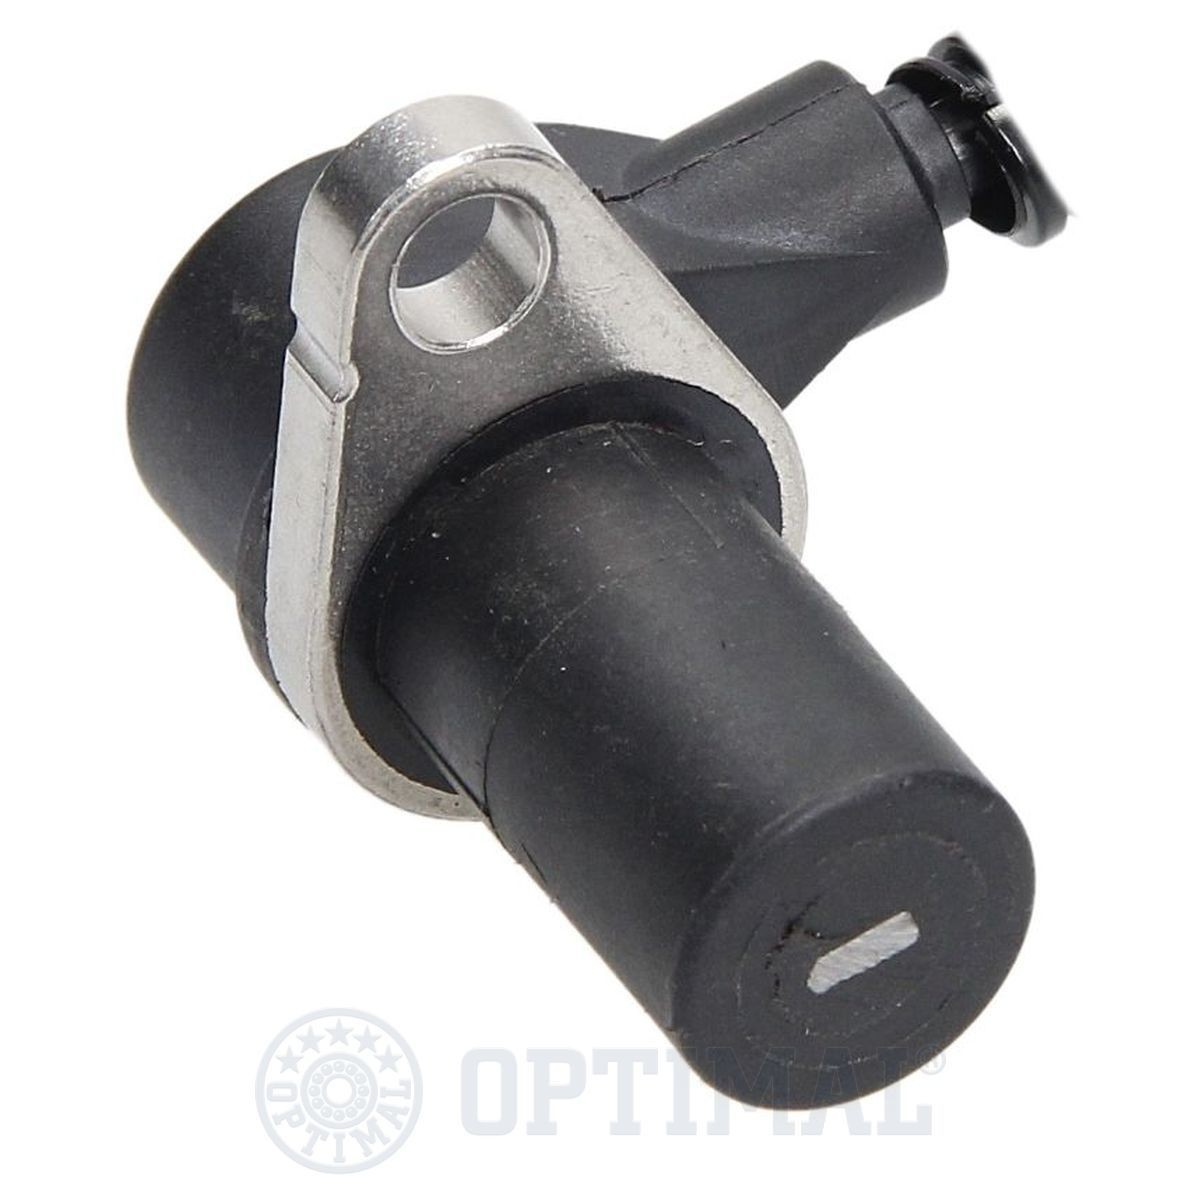 06S230 Anti lock brake sensor OPTIMAL 06-S230 review and test